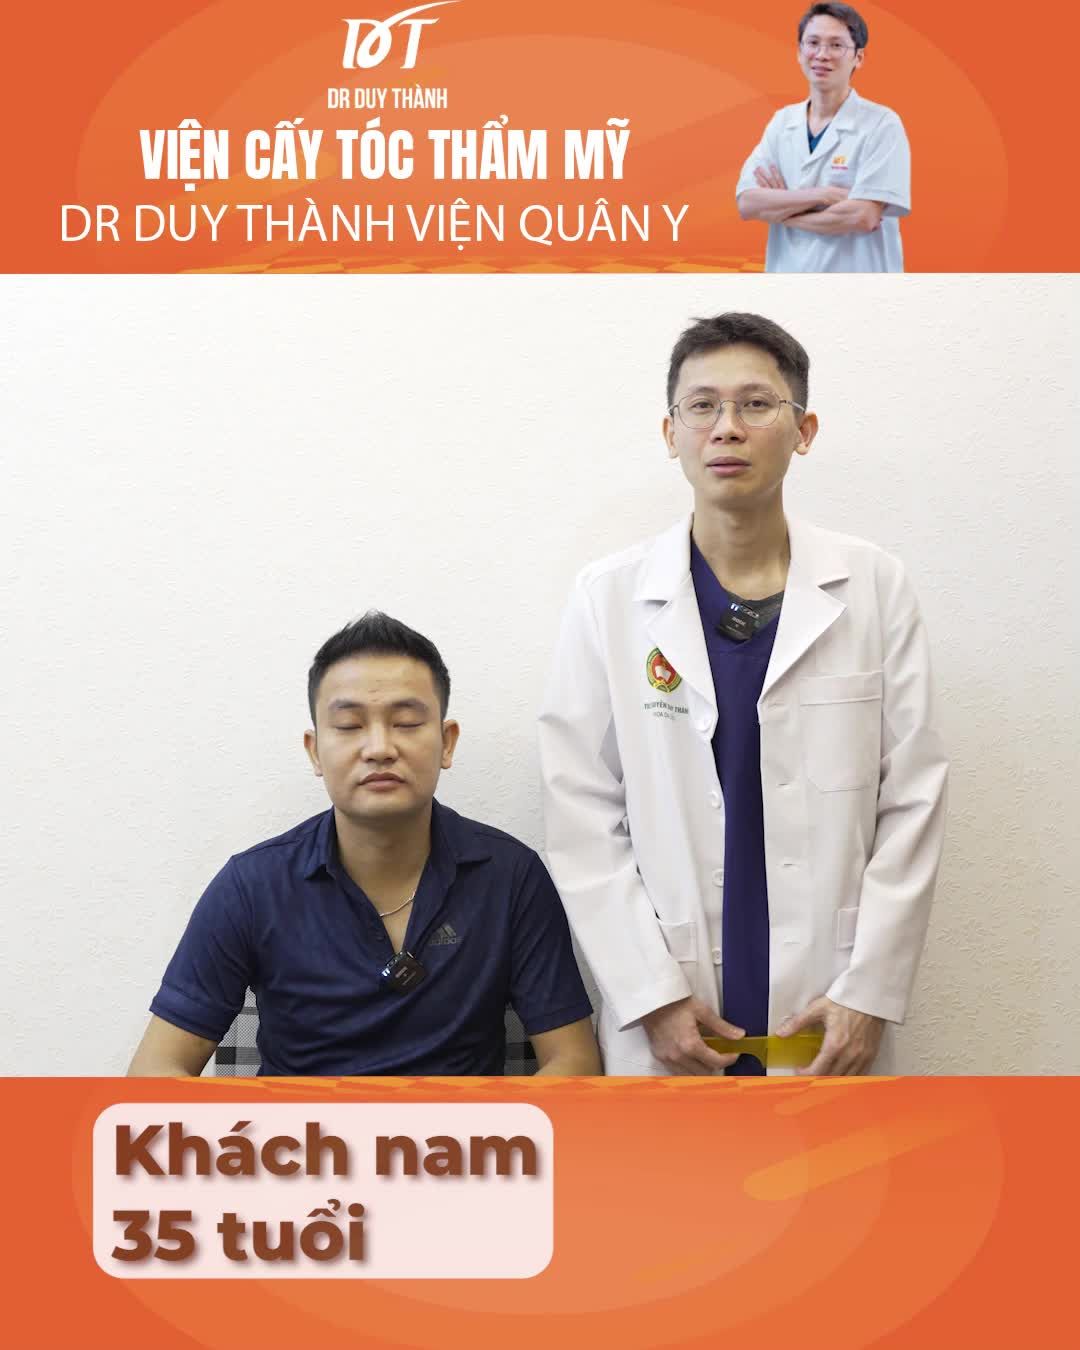 Dr Duy Thành phân tích case cấy tóc sau 5 tháng, khách nam 35 tuổi Hà Nội